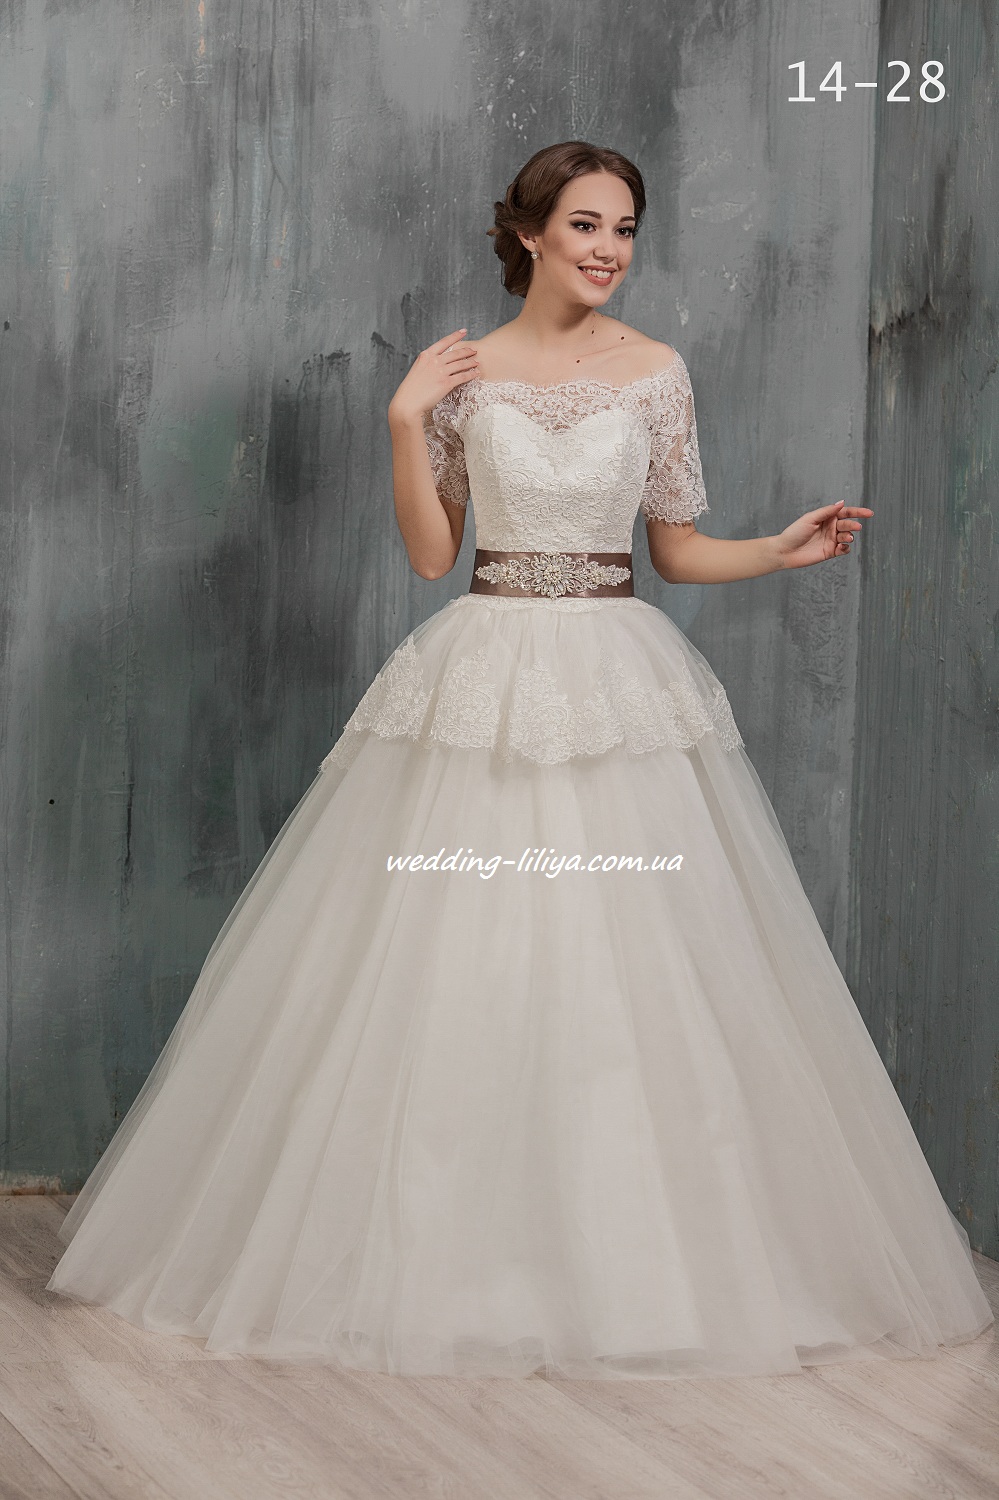 Свадебное платье №14-38